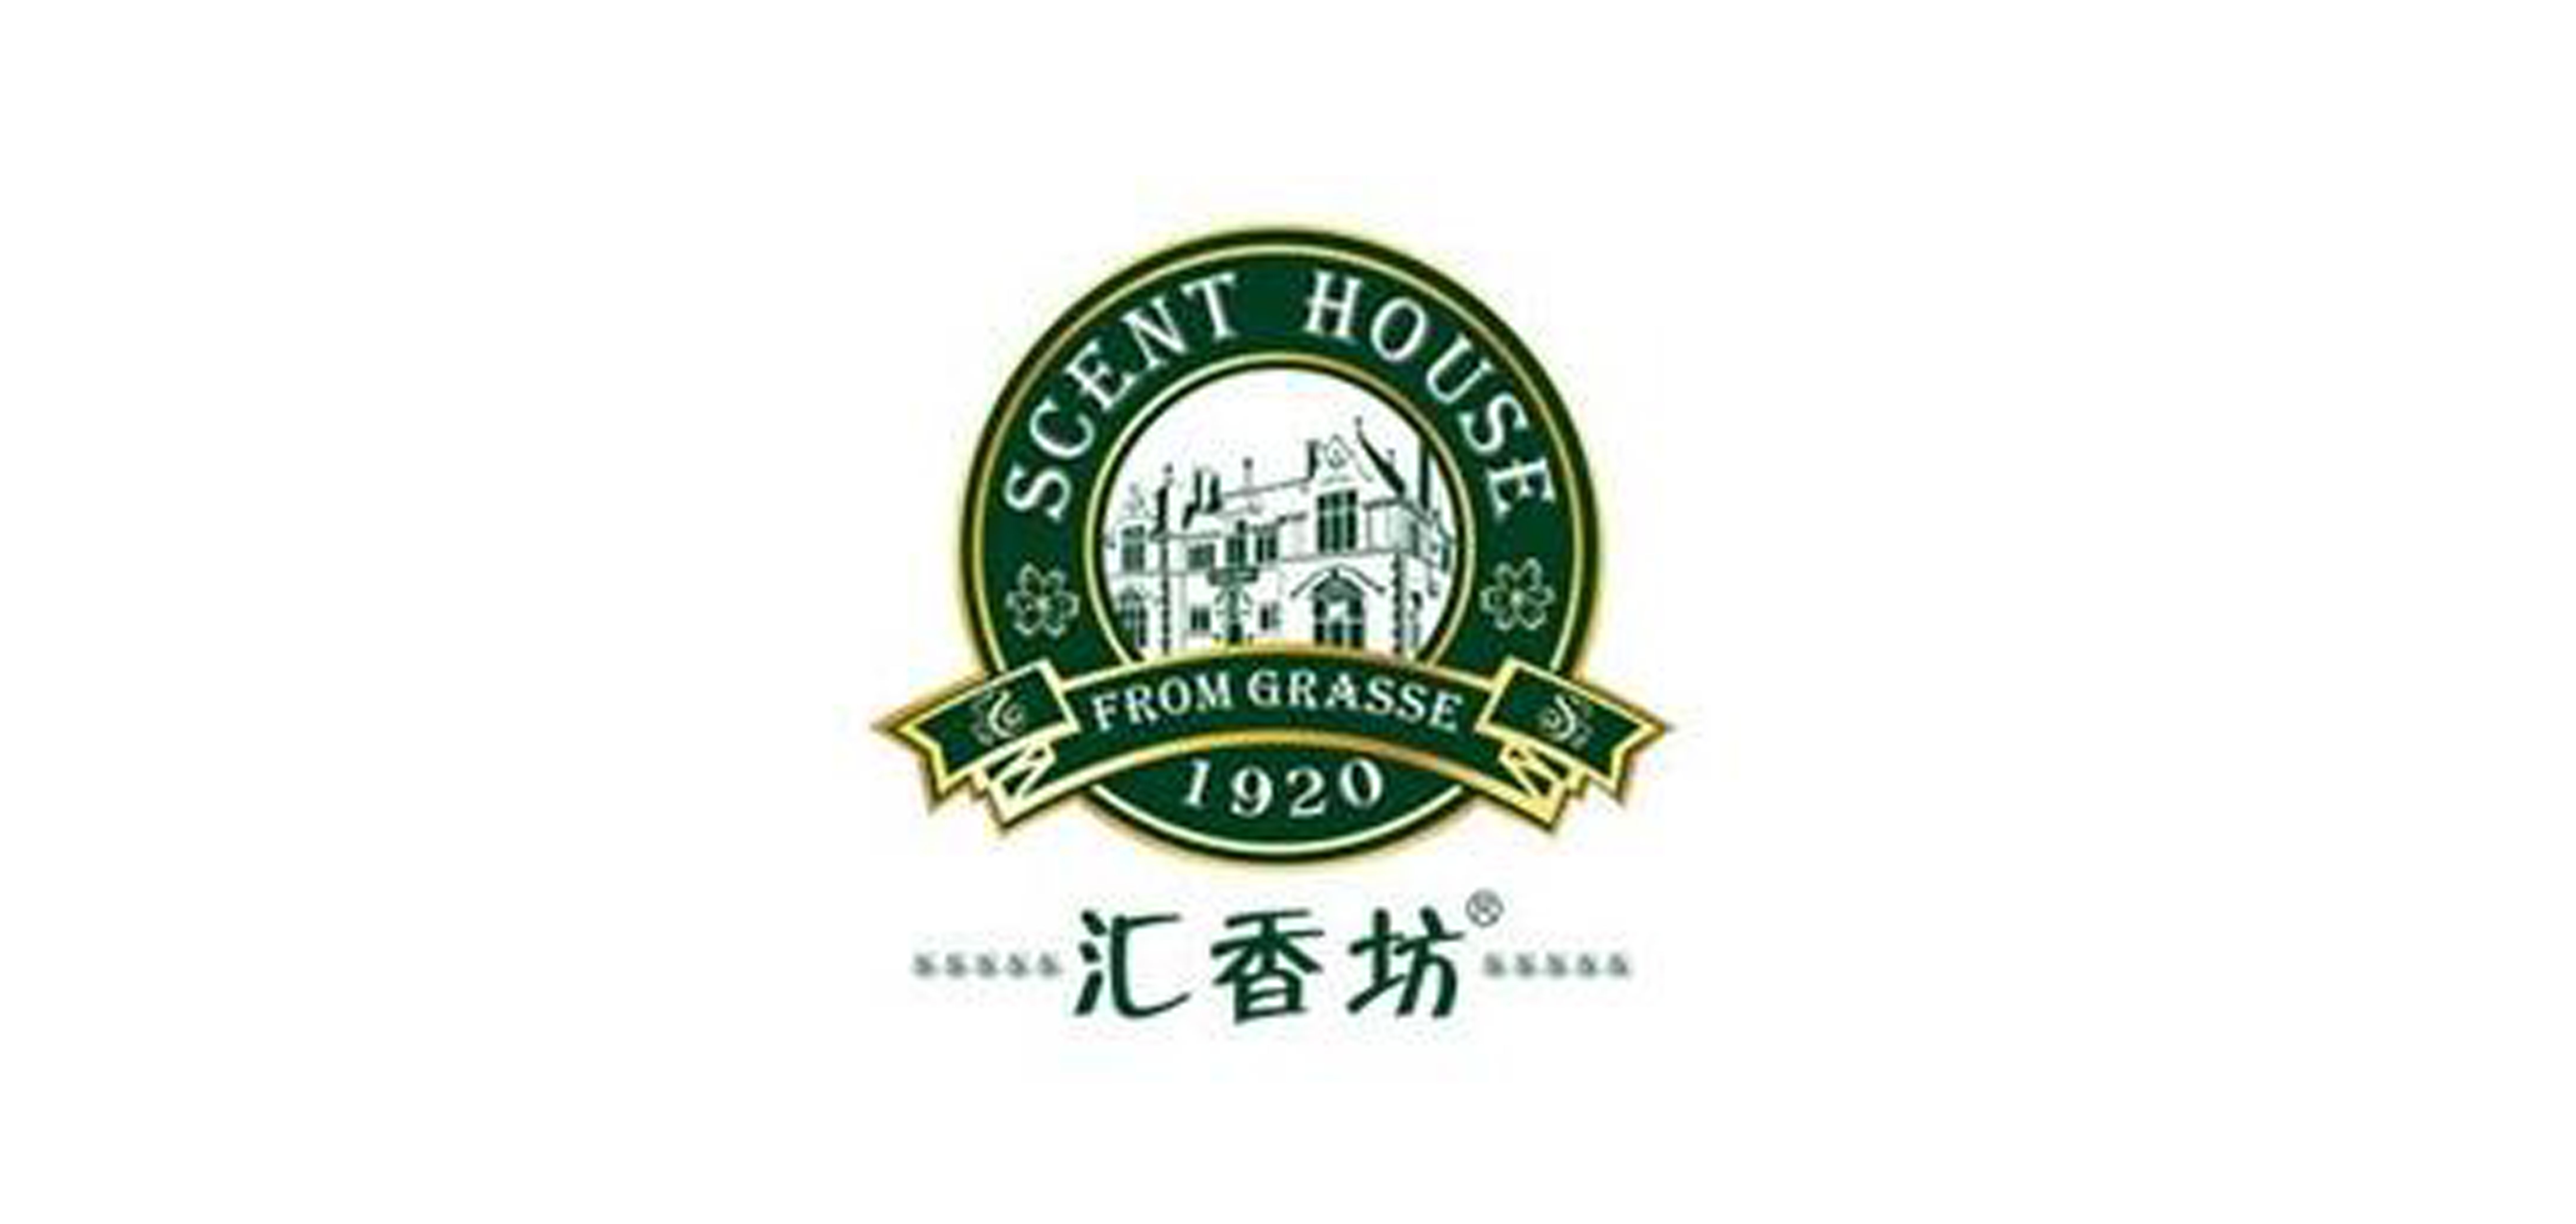 汇香坊scenthouse面膜标志logo设计